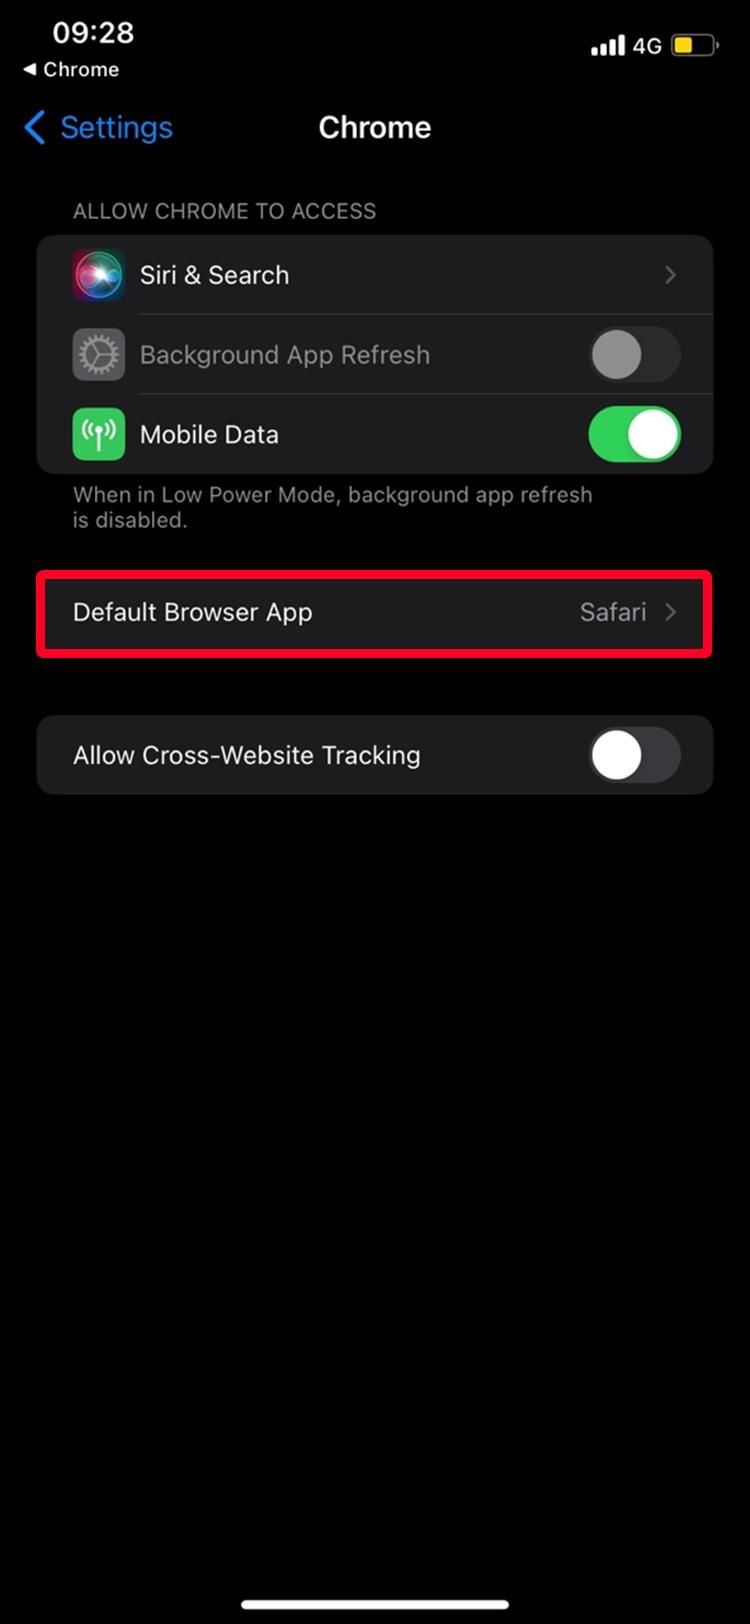 Captura de tela das configurações do navegador Chrome no iPhone com a opção Aplicativo de navegador padrão destacada